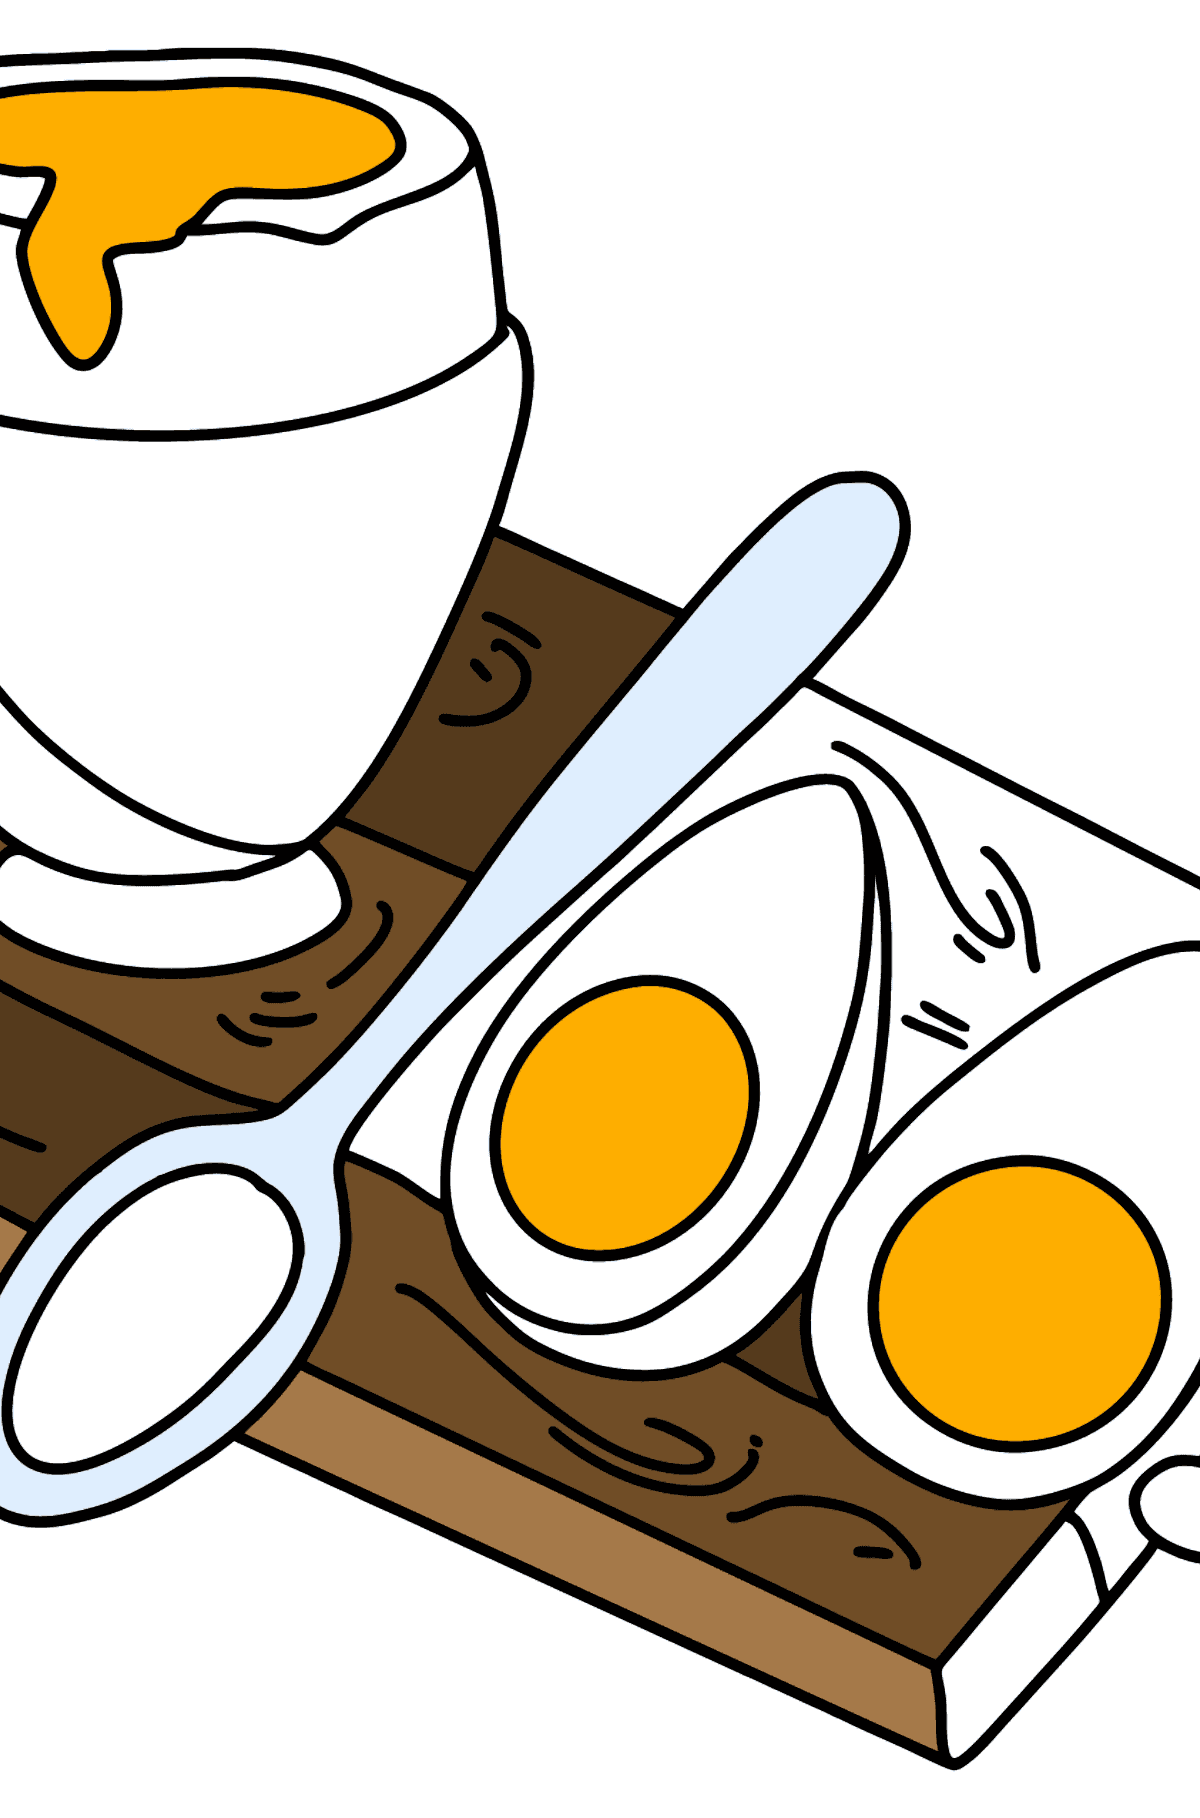 Dibujo de Huevo duro y huevo escalfado para colorear - Dibujos para Colorear para Niños